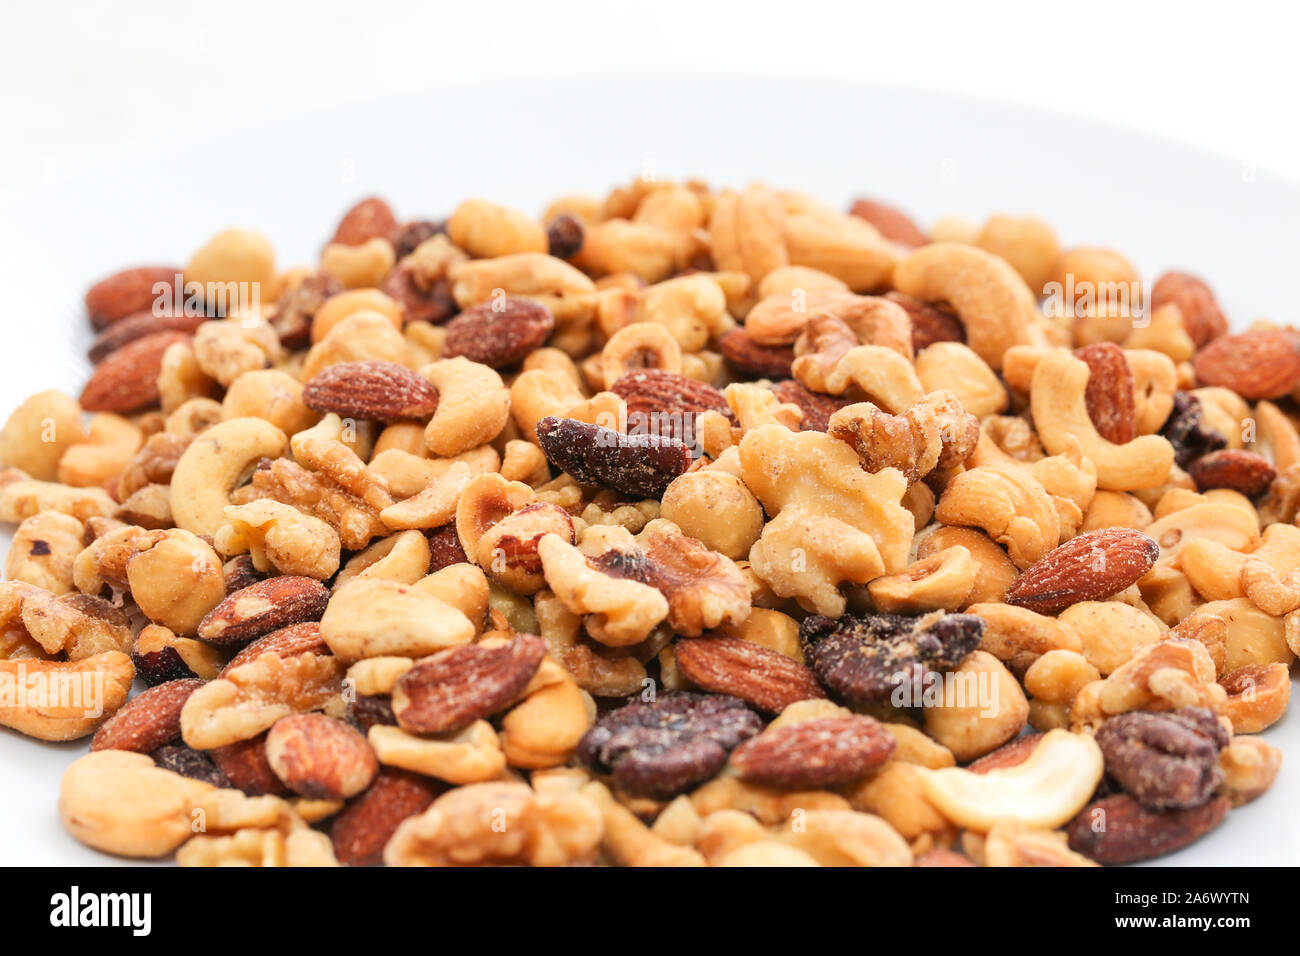 Nuts mix on white background - Image Stock Photo